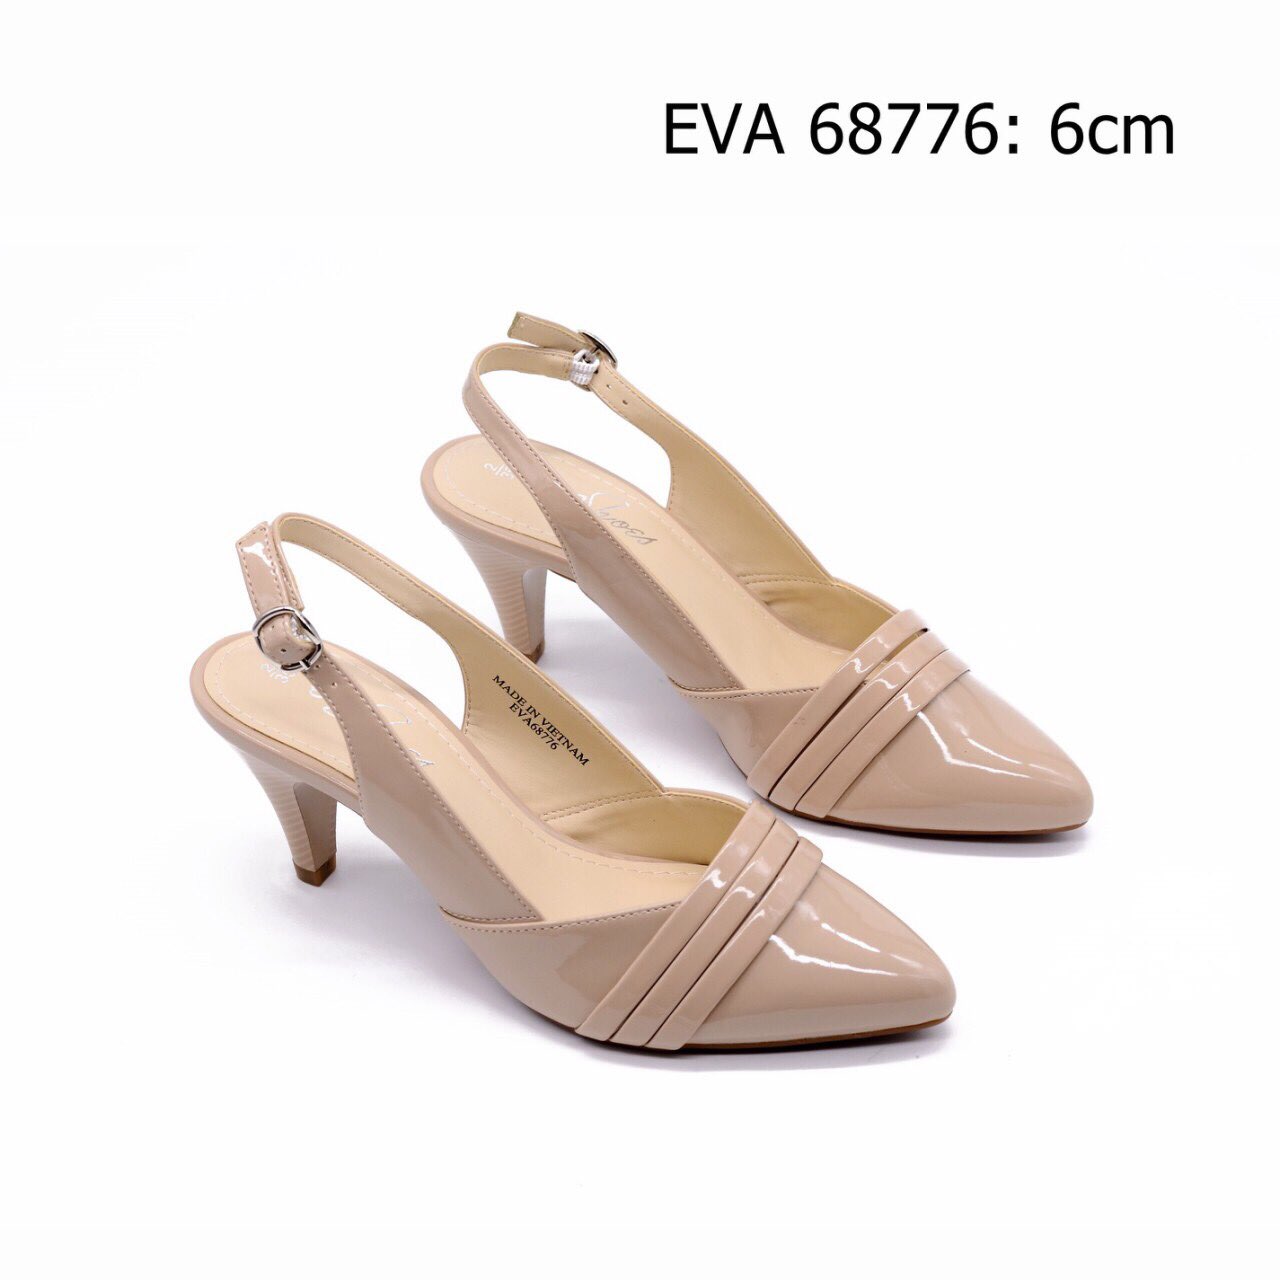 Giày công sở EVA68776 thiết kế quai hậu duyên dáng, nữ tính.